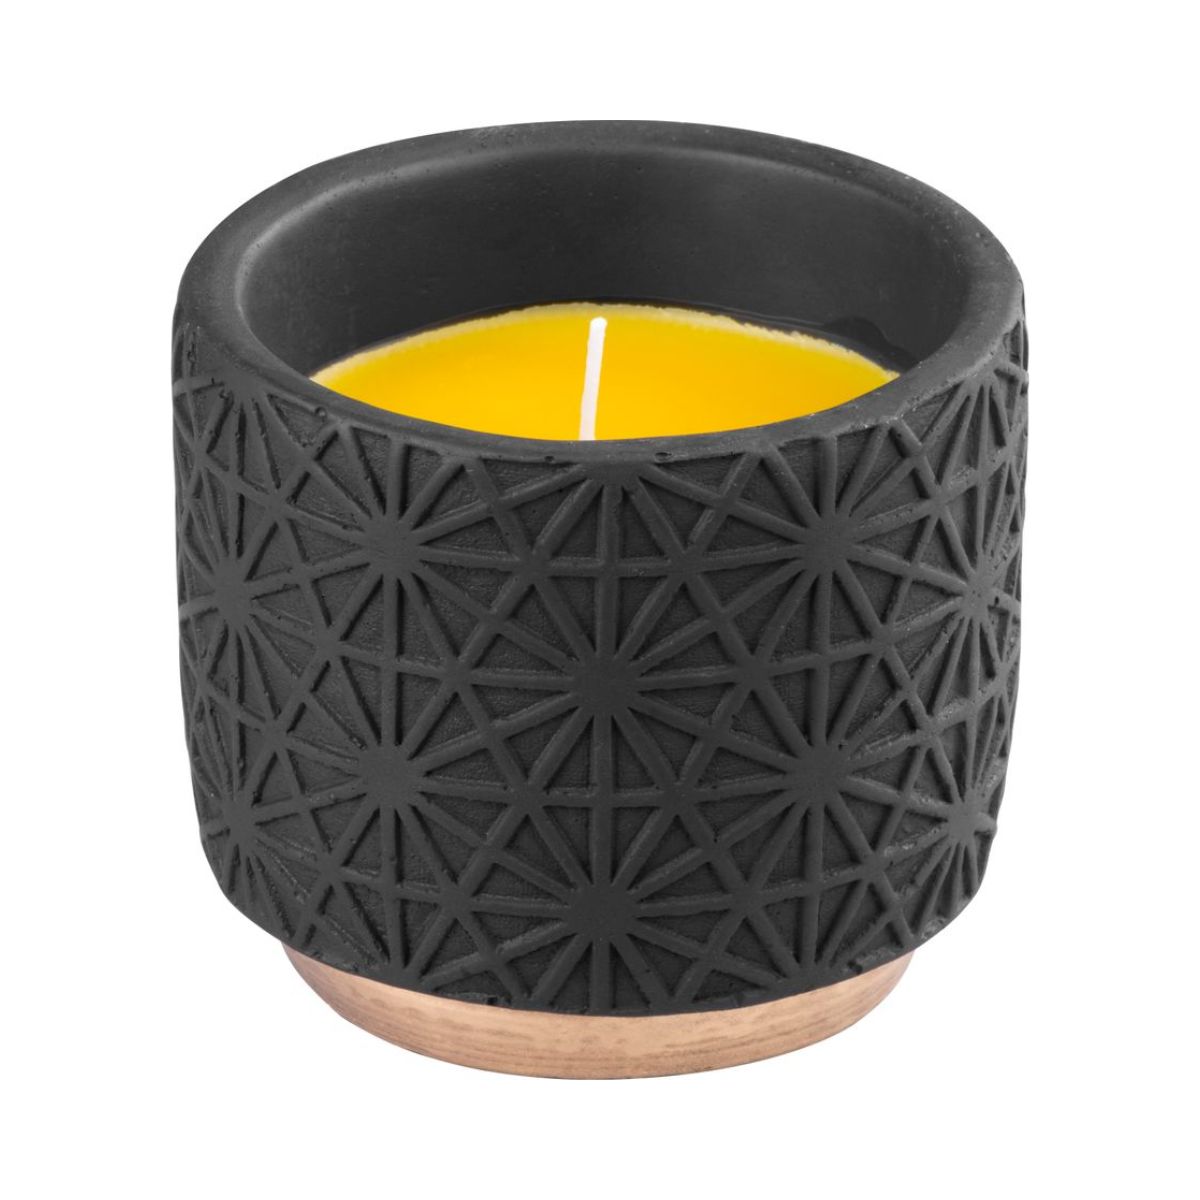 Aparate si dispozitive - Lumanare anti tantari parfumata, in suport de ceramica neagra, Citronella, 200 gr, 26 ore durata de ardere, hectarul.ro